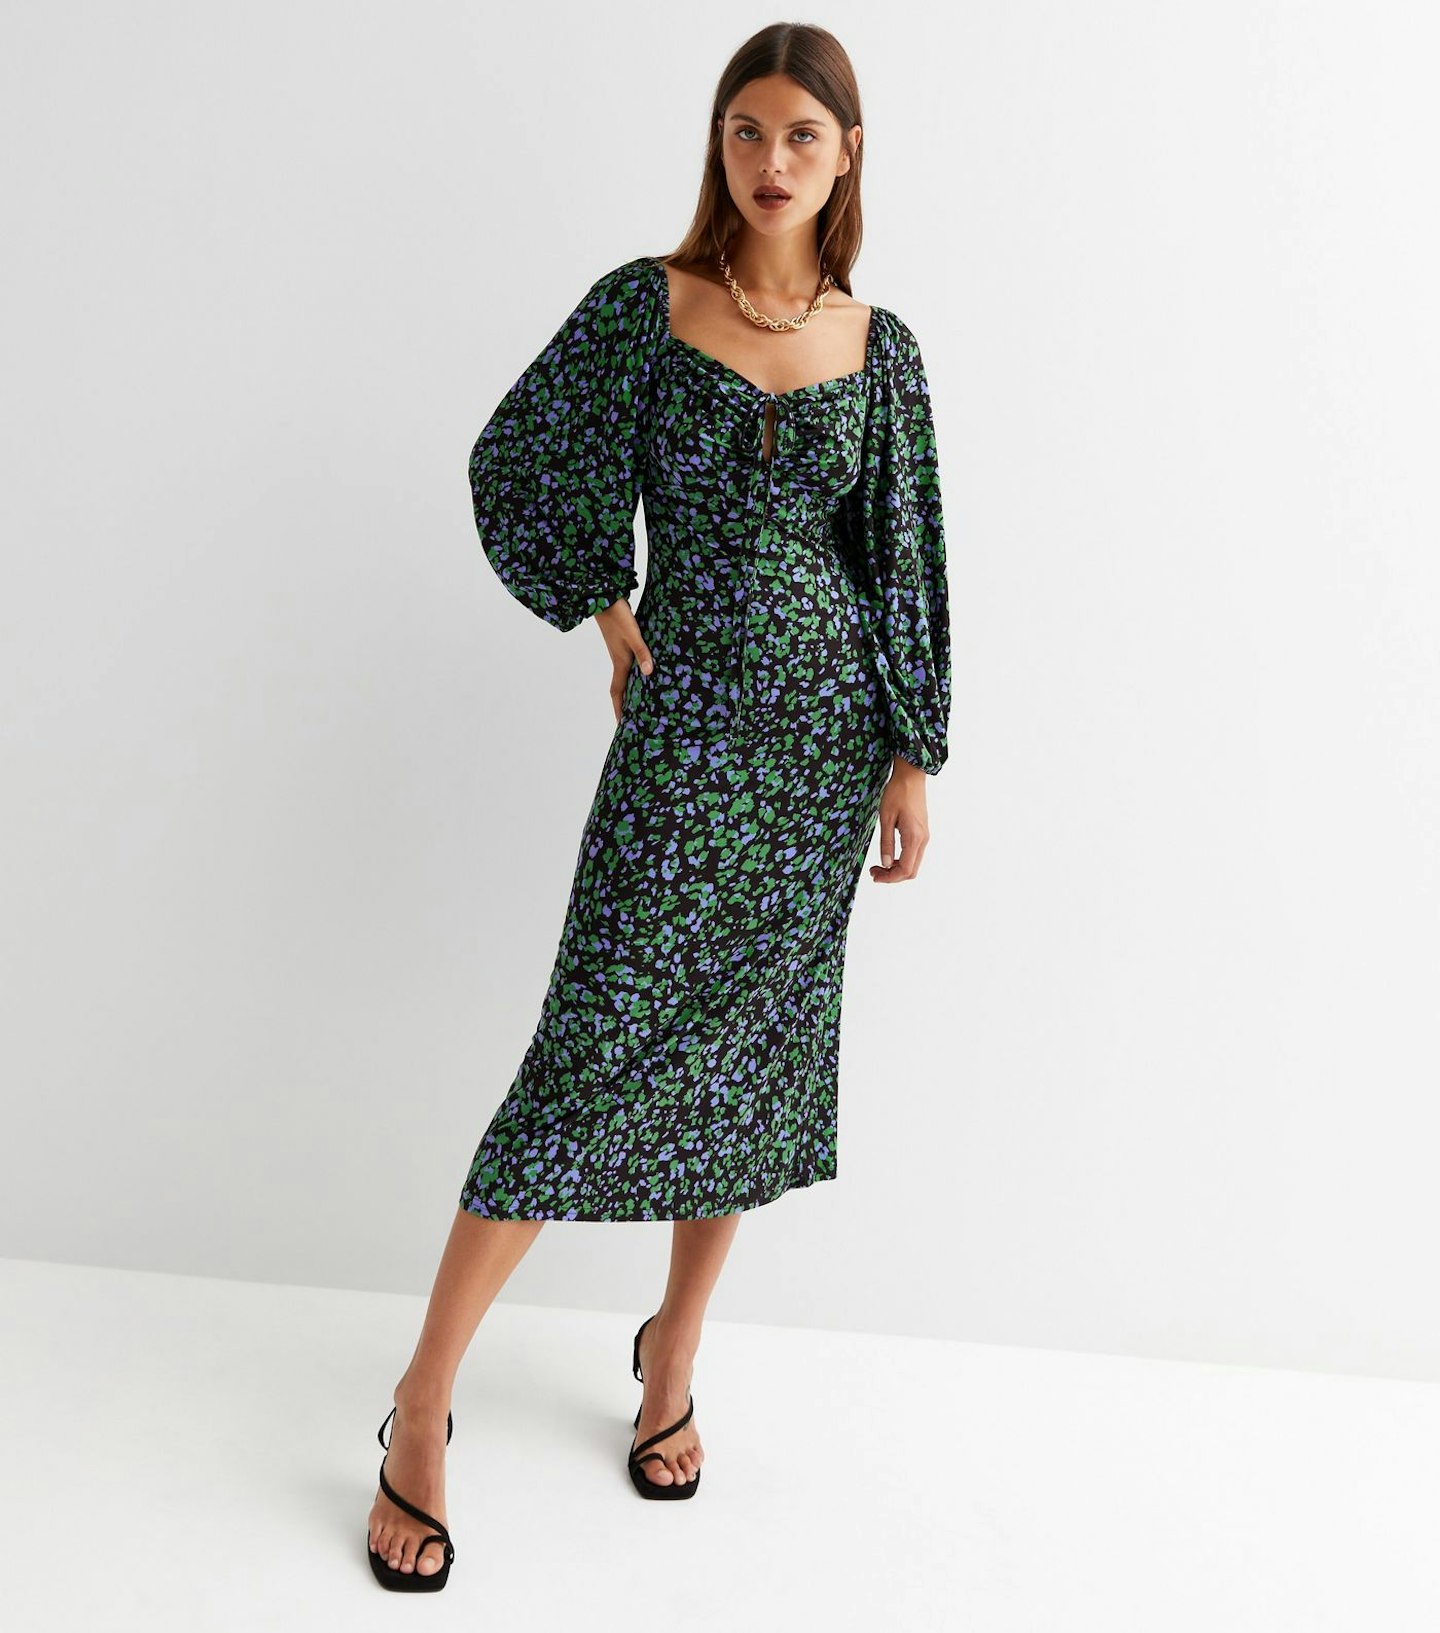 Midi Dresses Under £50 But Look Expensive | Fashion | Grazia